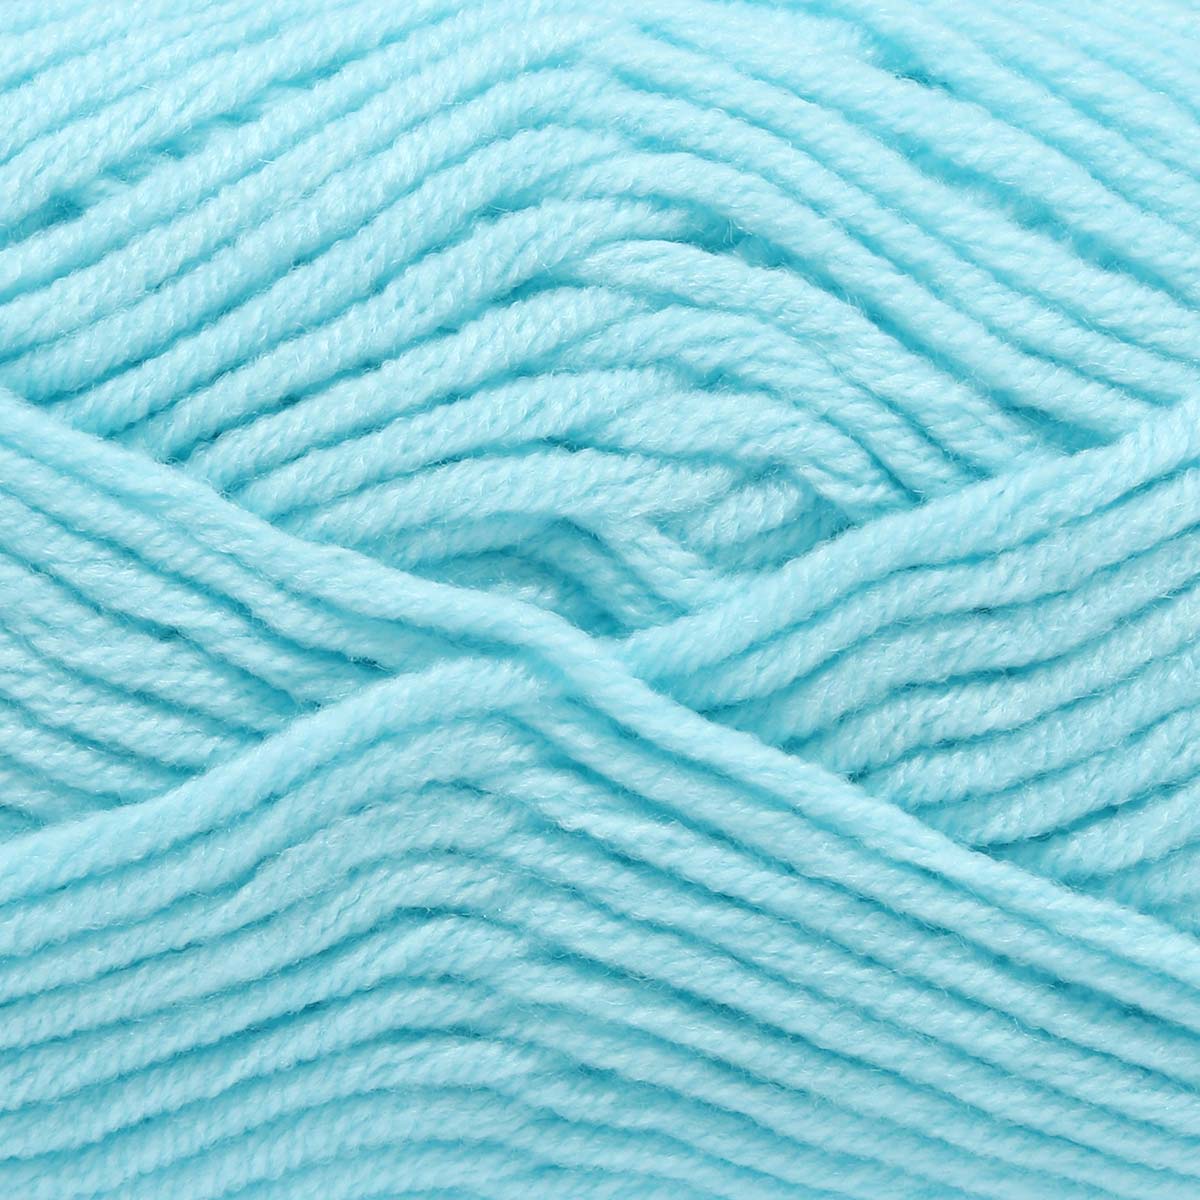 Пряжа для вязания Astra Premium milk cotton хлопок акрил 50 гр 100 м 84 голубой лед 3 мотка - фото 4